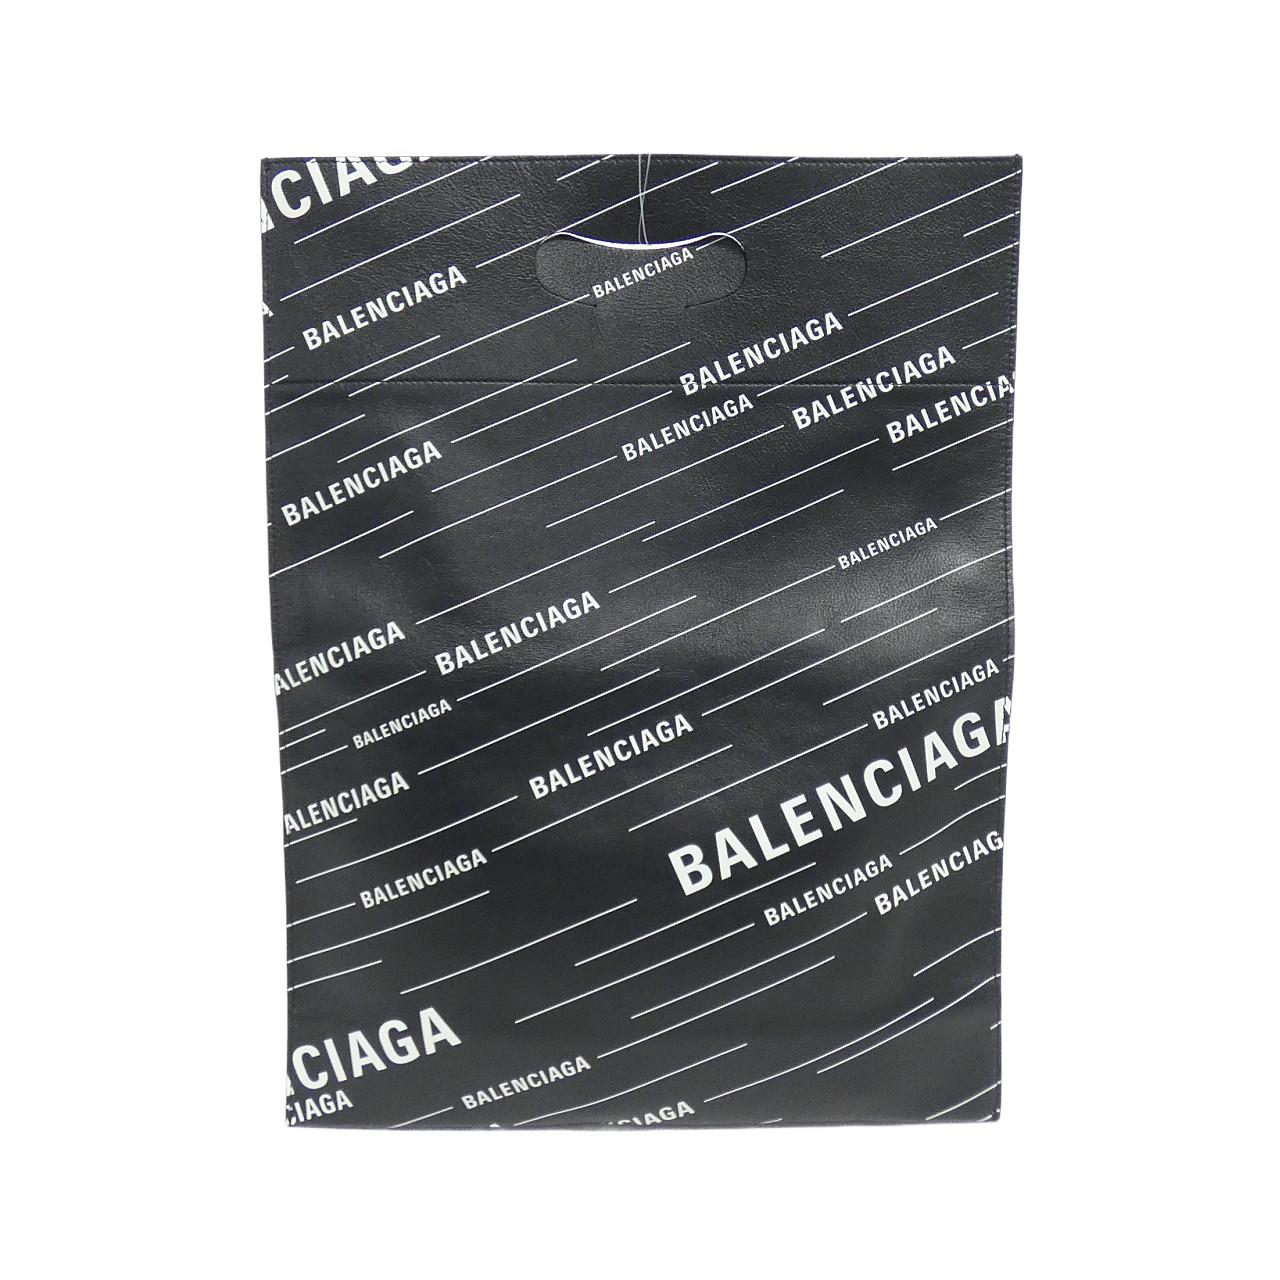 BALENCIAGA 544310 0XTON Bag